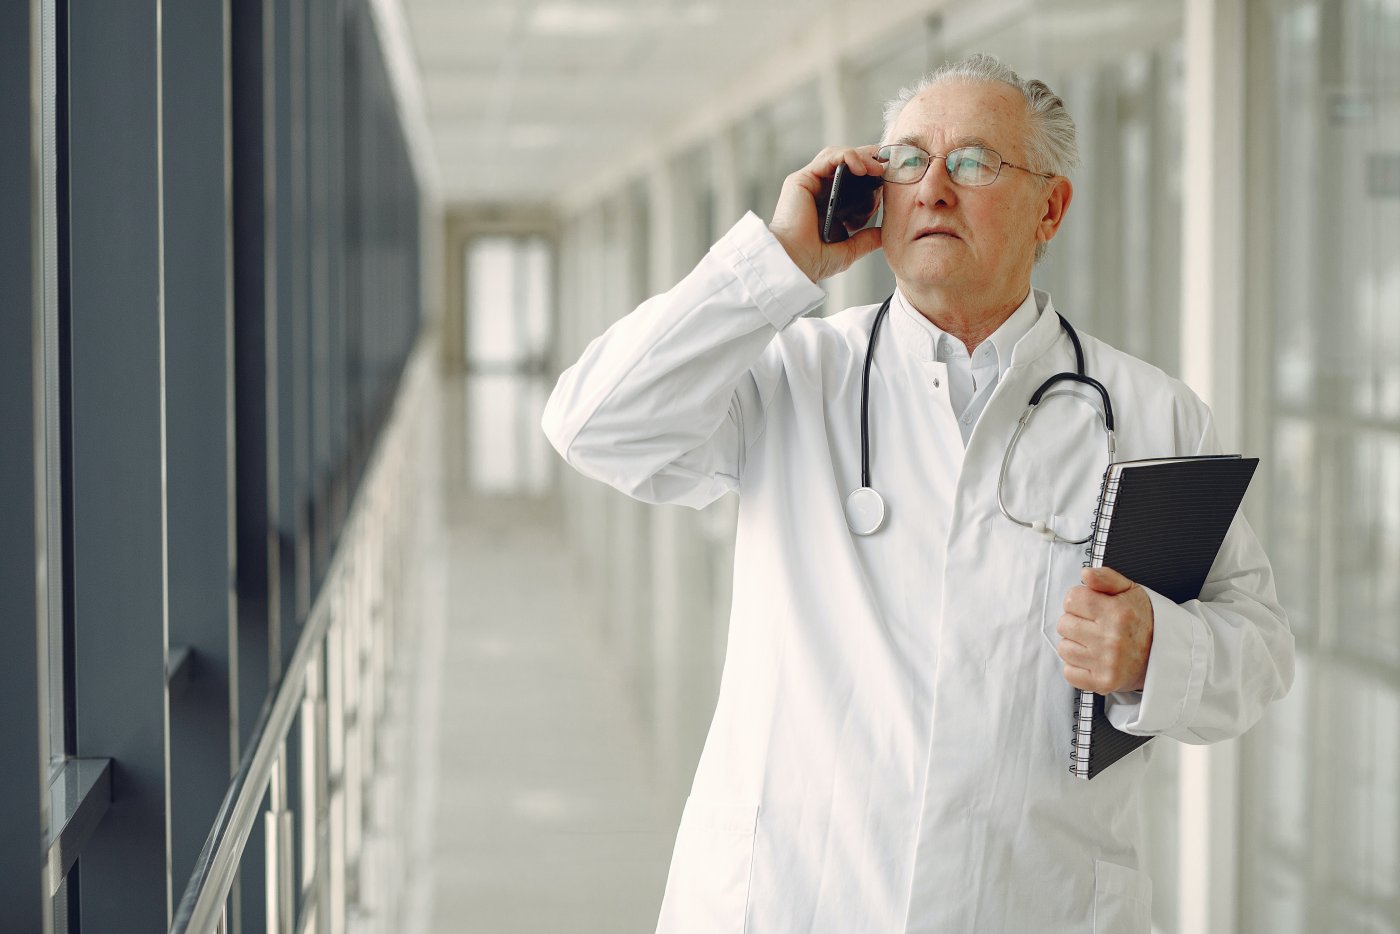 Lekarz ubrany w biały kitel stoi na pustym, szpitalnym korytarzu i rozmawia przez telefon. Na szyi ma stetoskop, a w lewej ręce trzyma zeszyt.